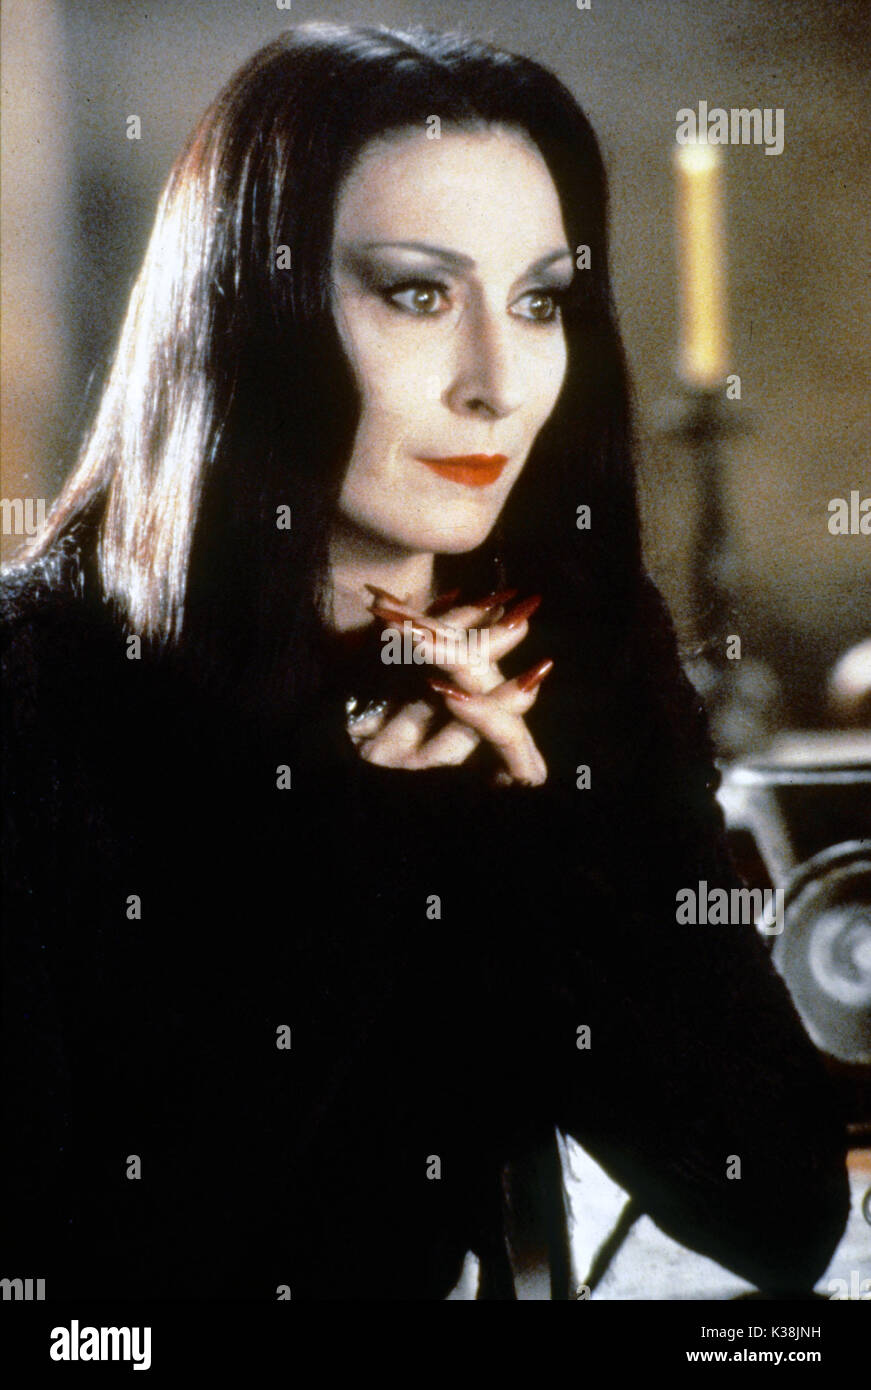 La famiglia Addams ANGELICA HOUSTON come Morticia Addams data: 1991 Foto  stock - Alamy